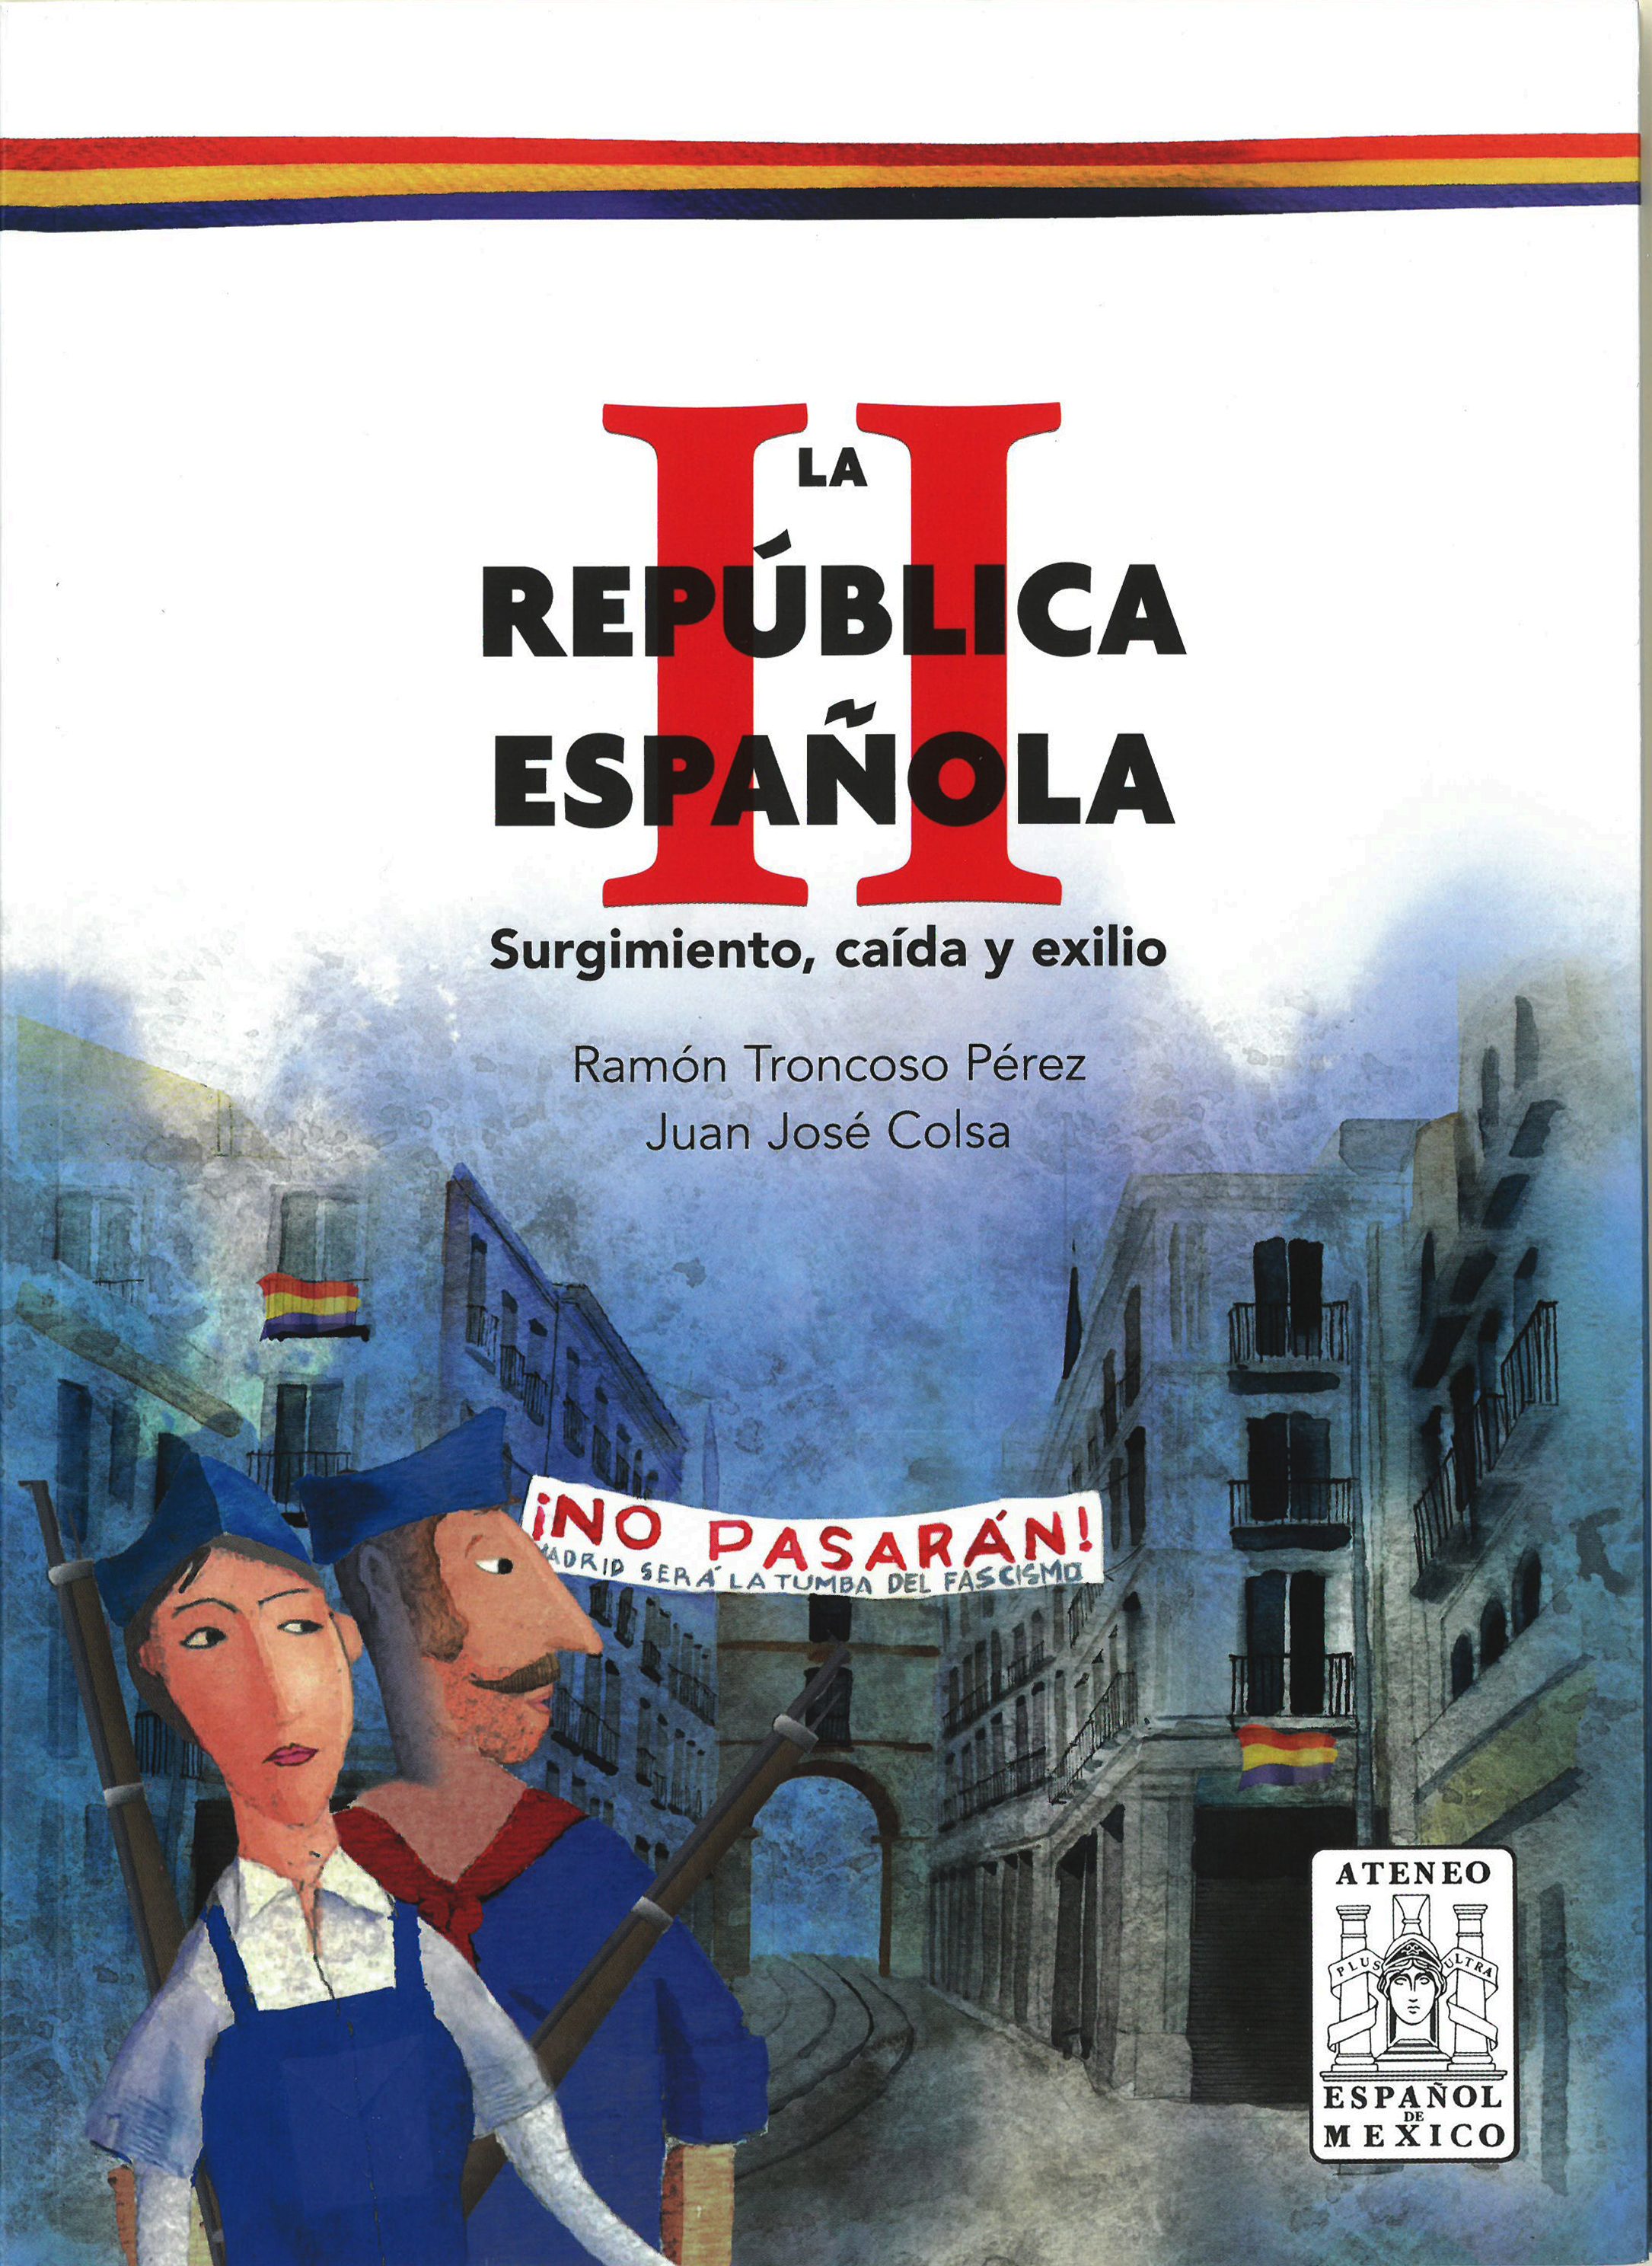 La II Republica Española, surgimiento caída y exilio. Image